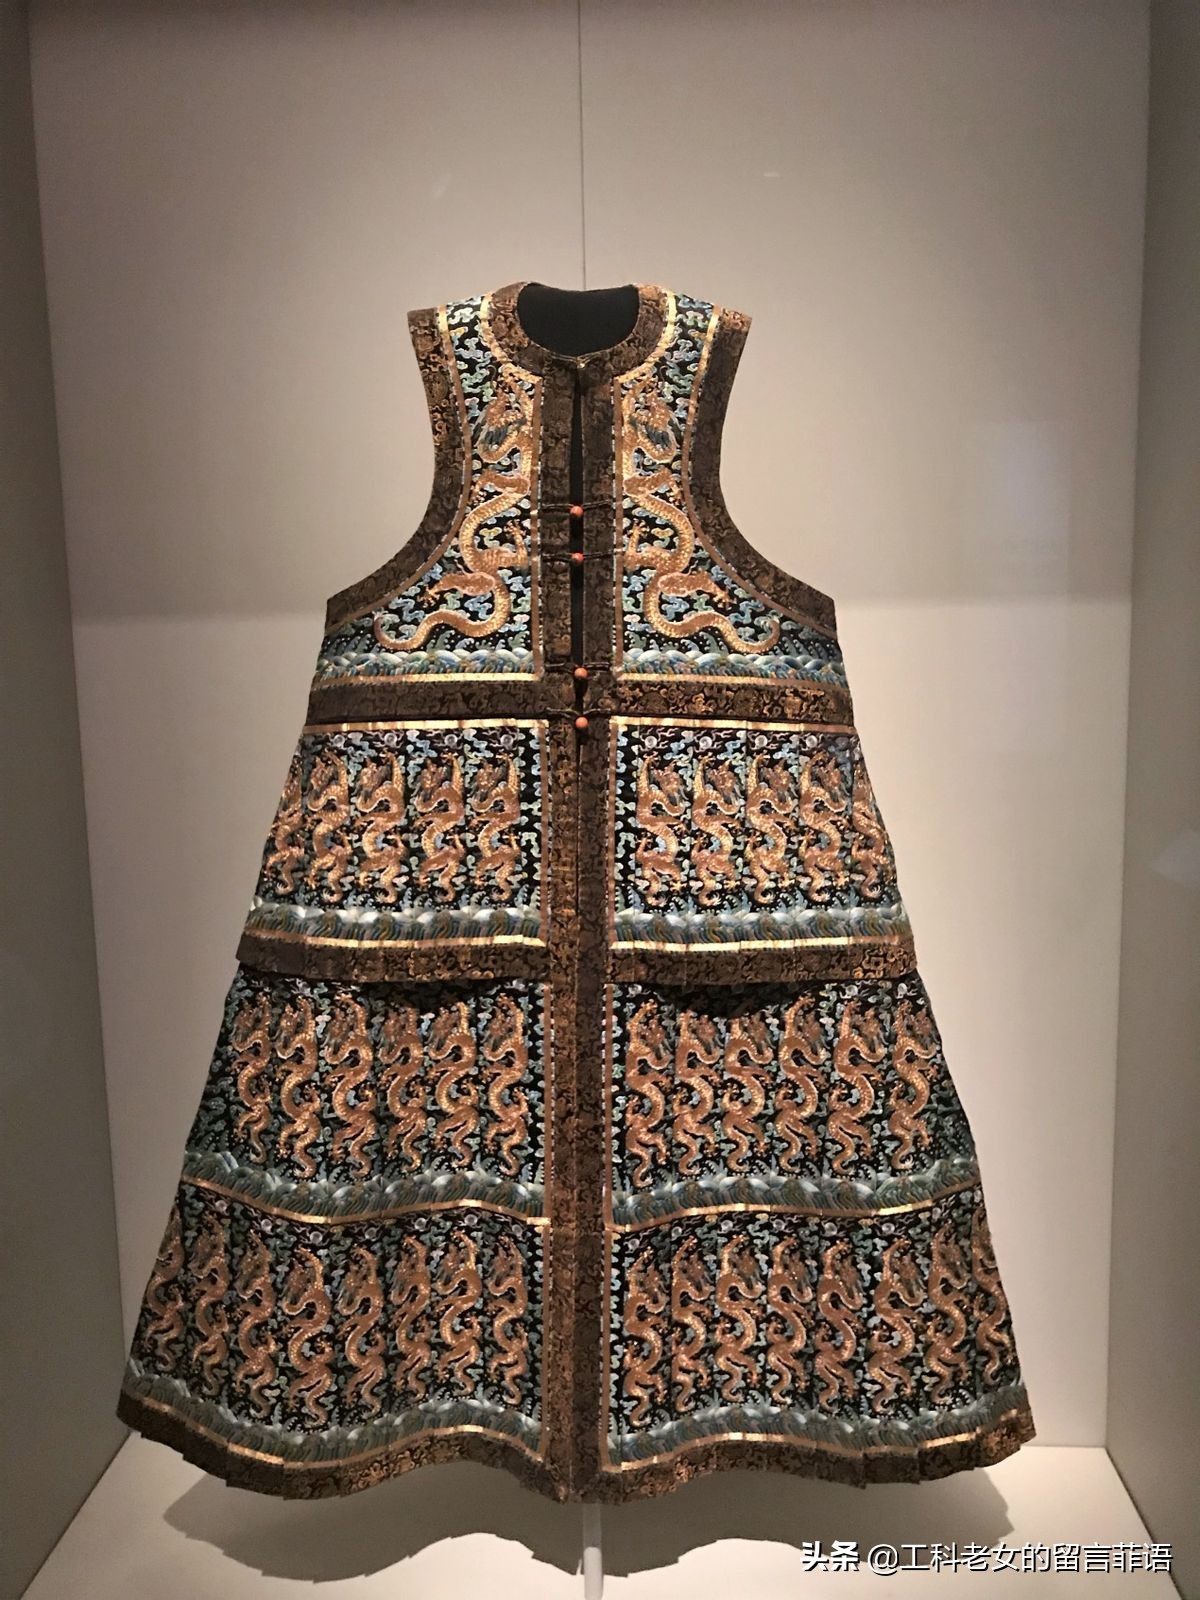 迪美博物馆：清代皇后的服饰有多美